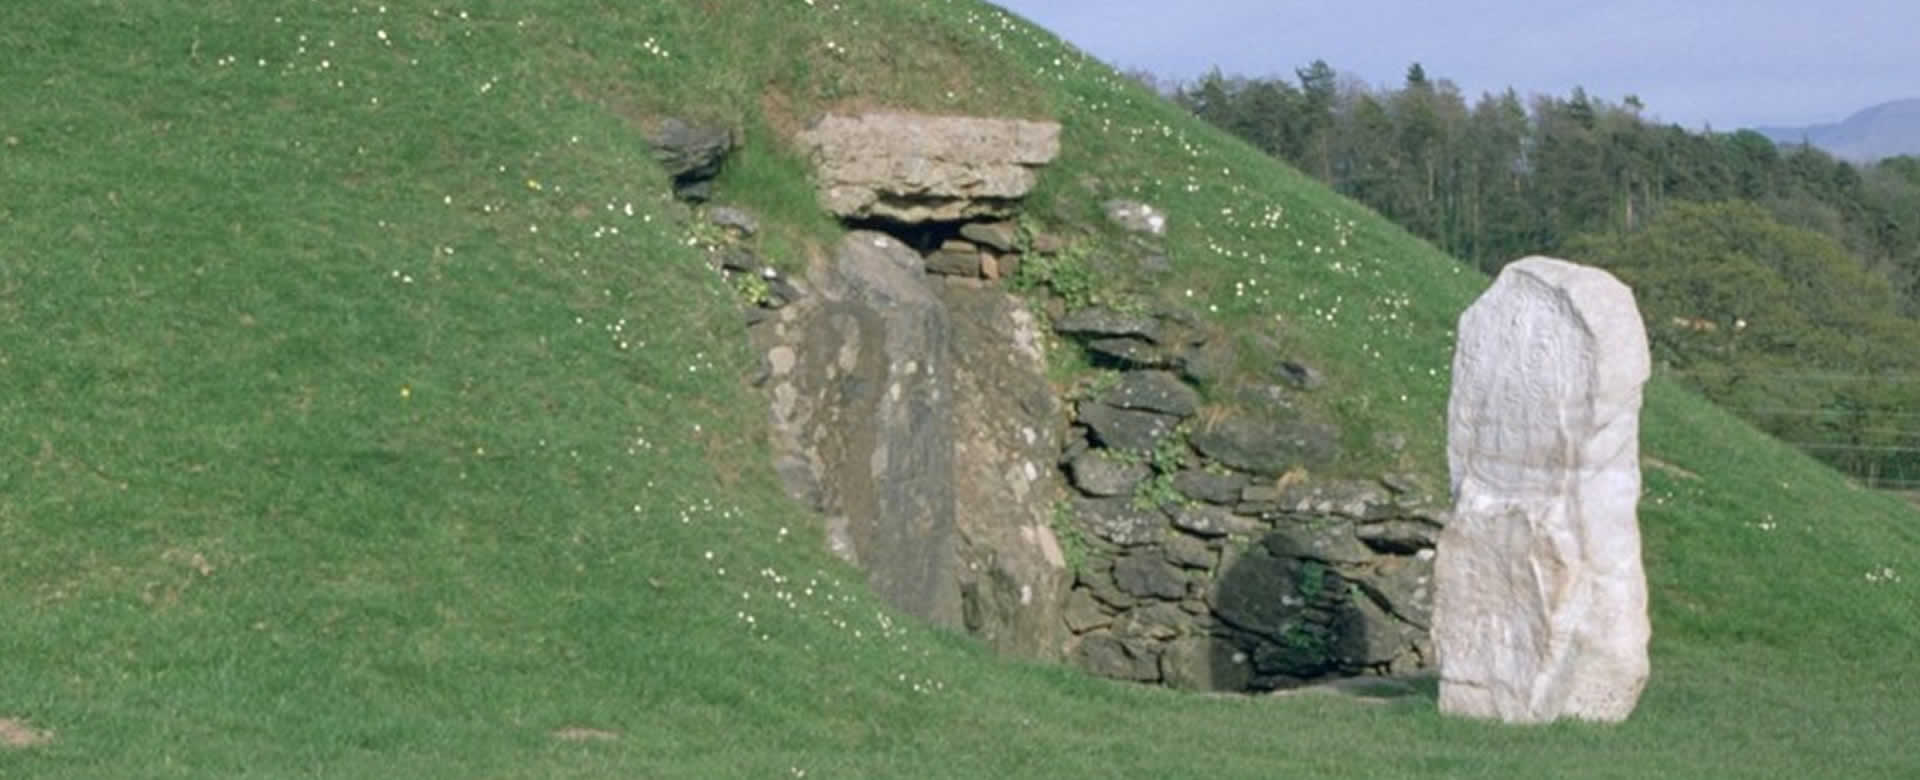 El monumento prehistórico Bryn Celli Ddu, Gales, Reino Unido.